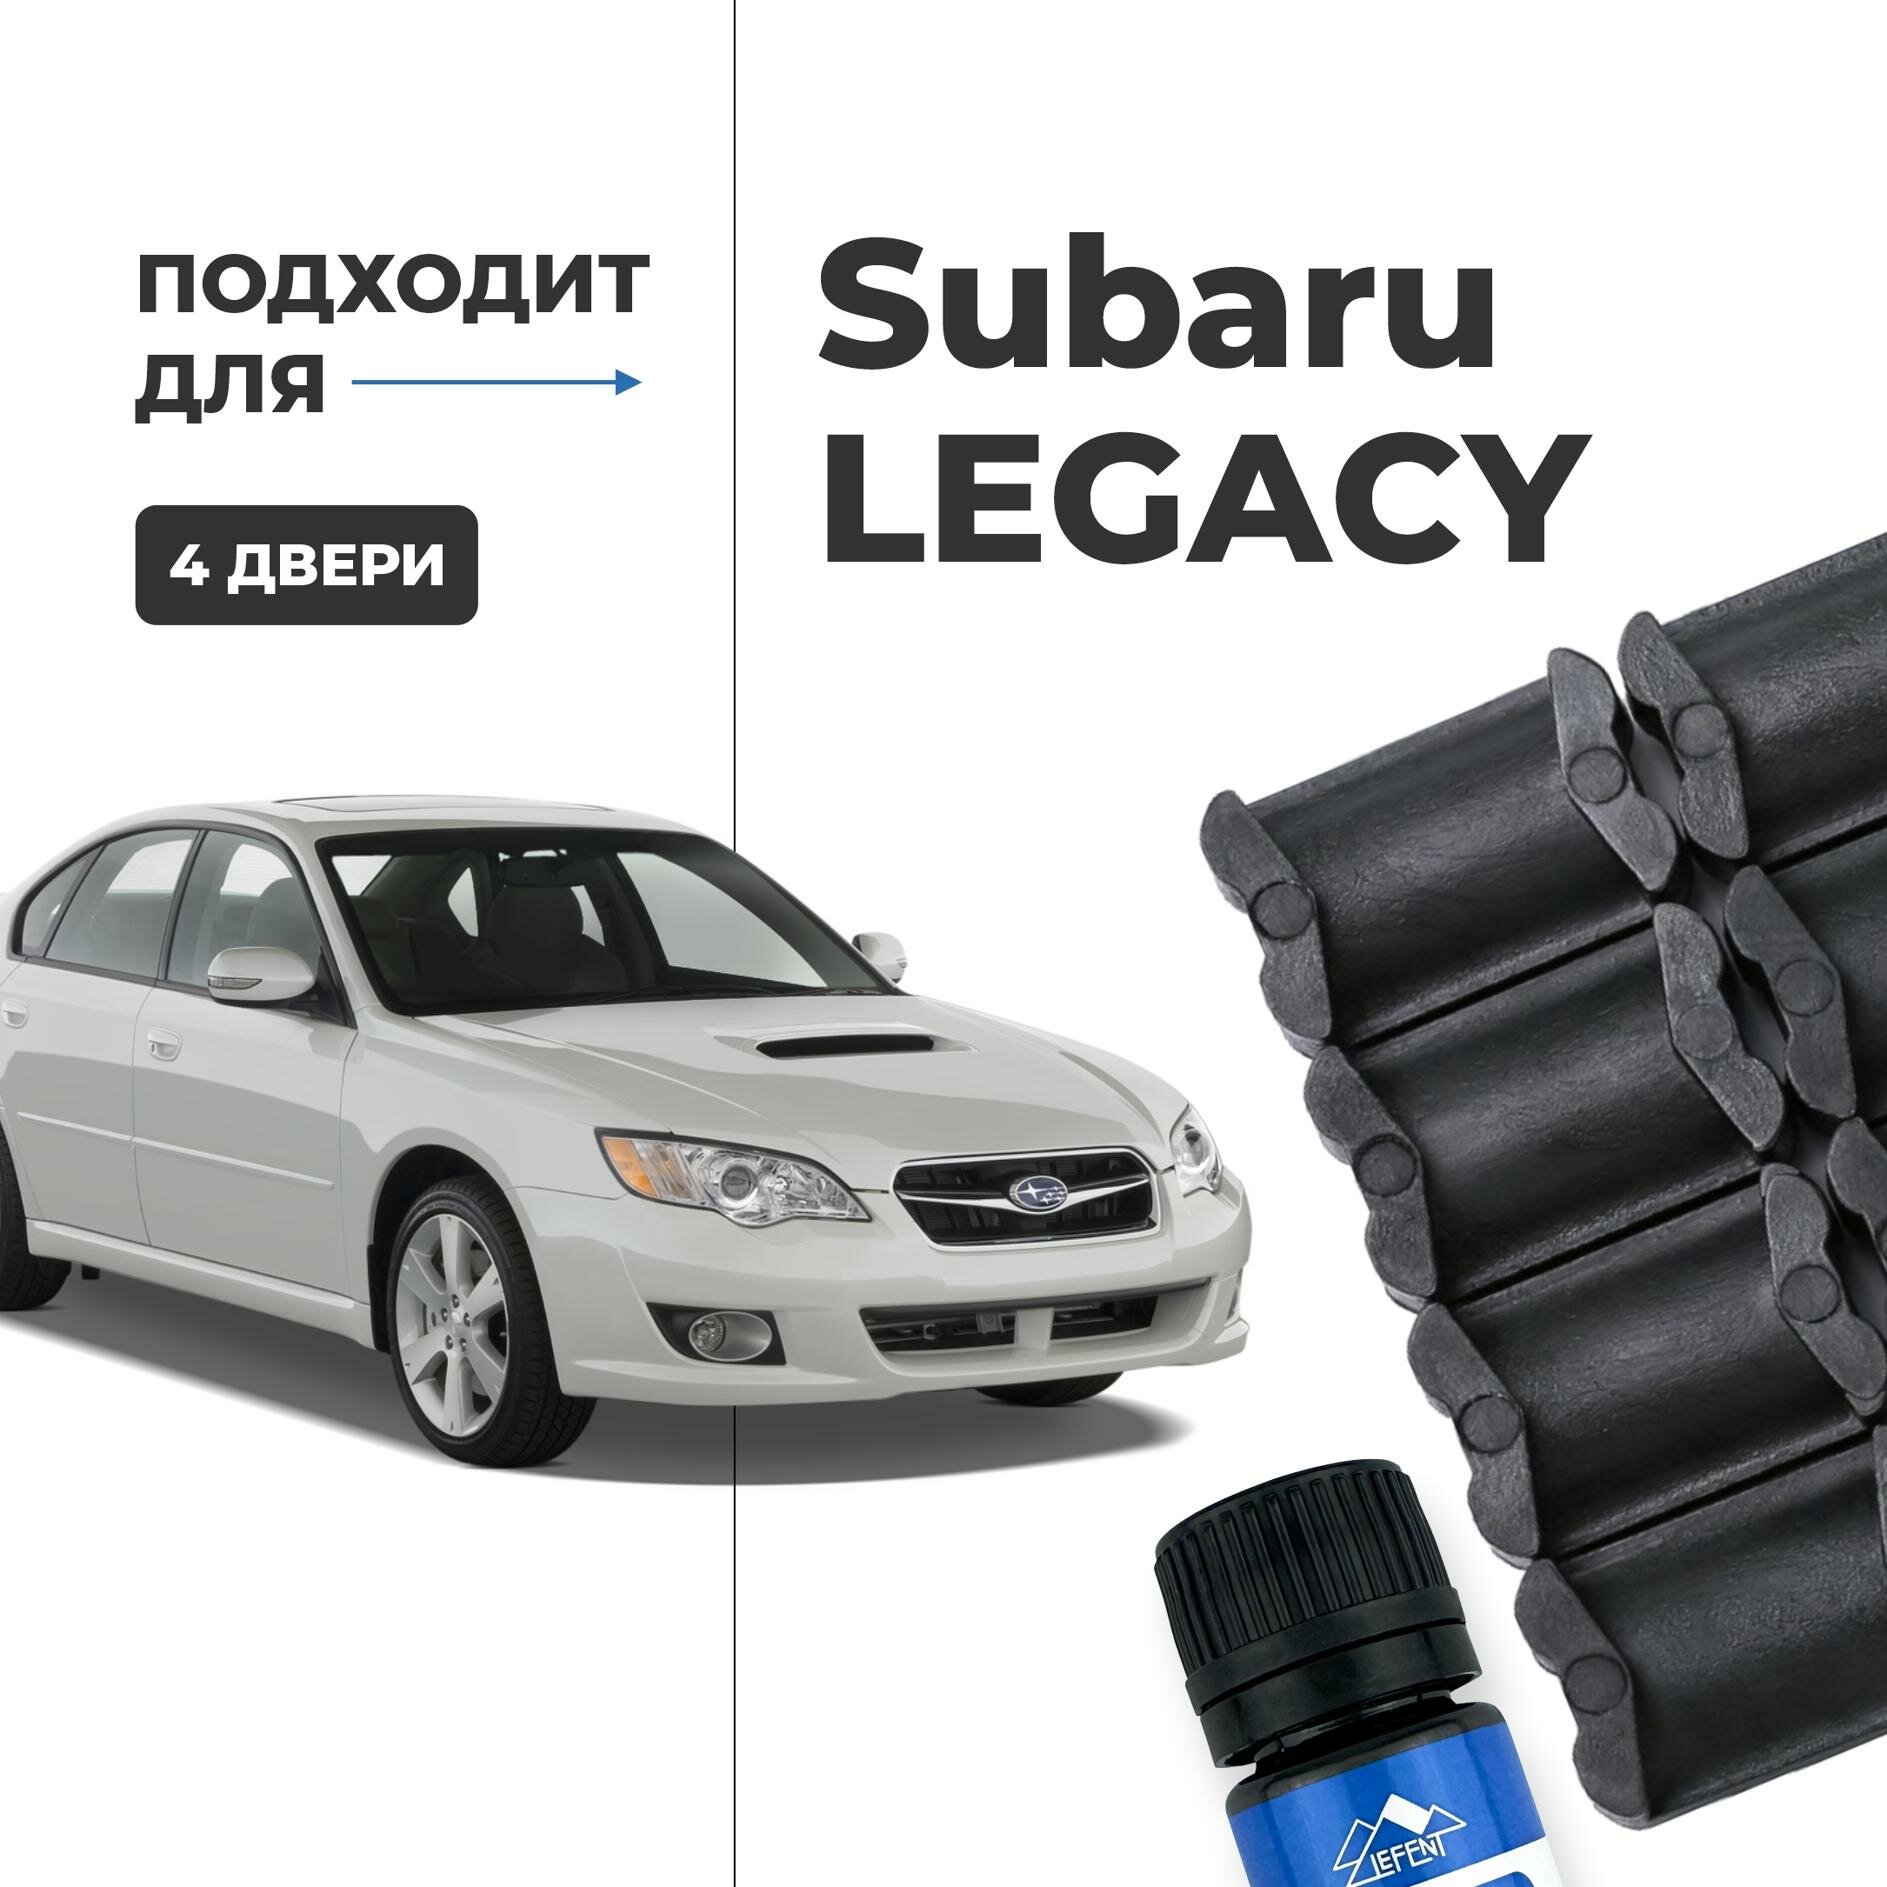 Ремкомплект ограничителей на 4 двери двери Subaru LEGACY, Кузова смотрите в описании - 1988-2017. Комплект ремонта фиксаторов Субару Легаси